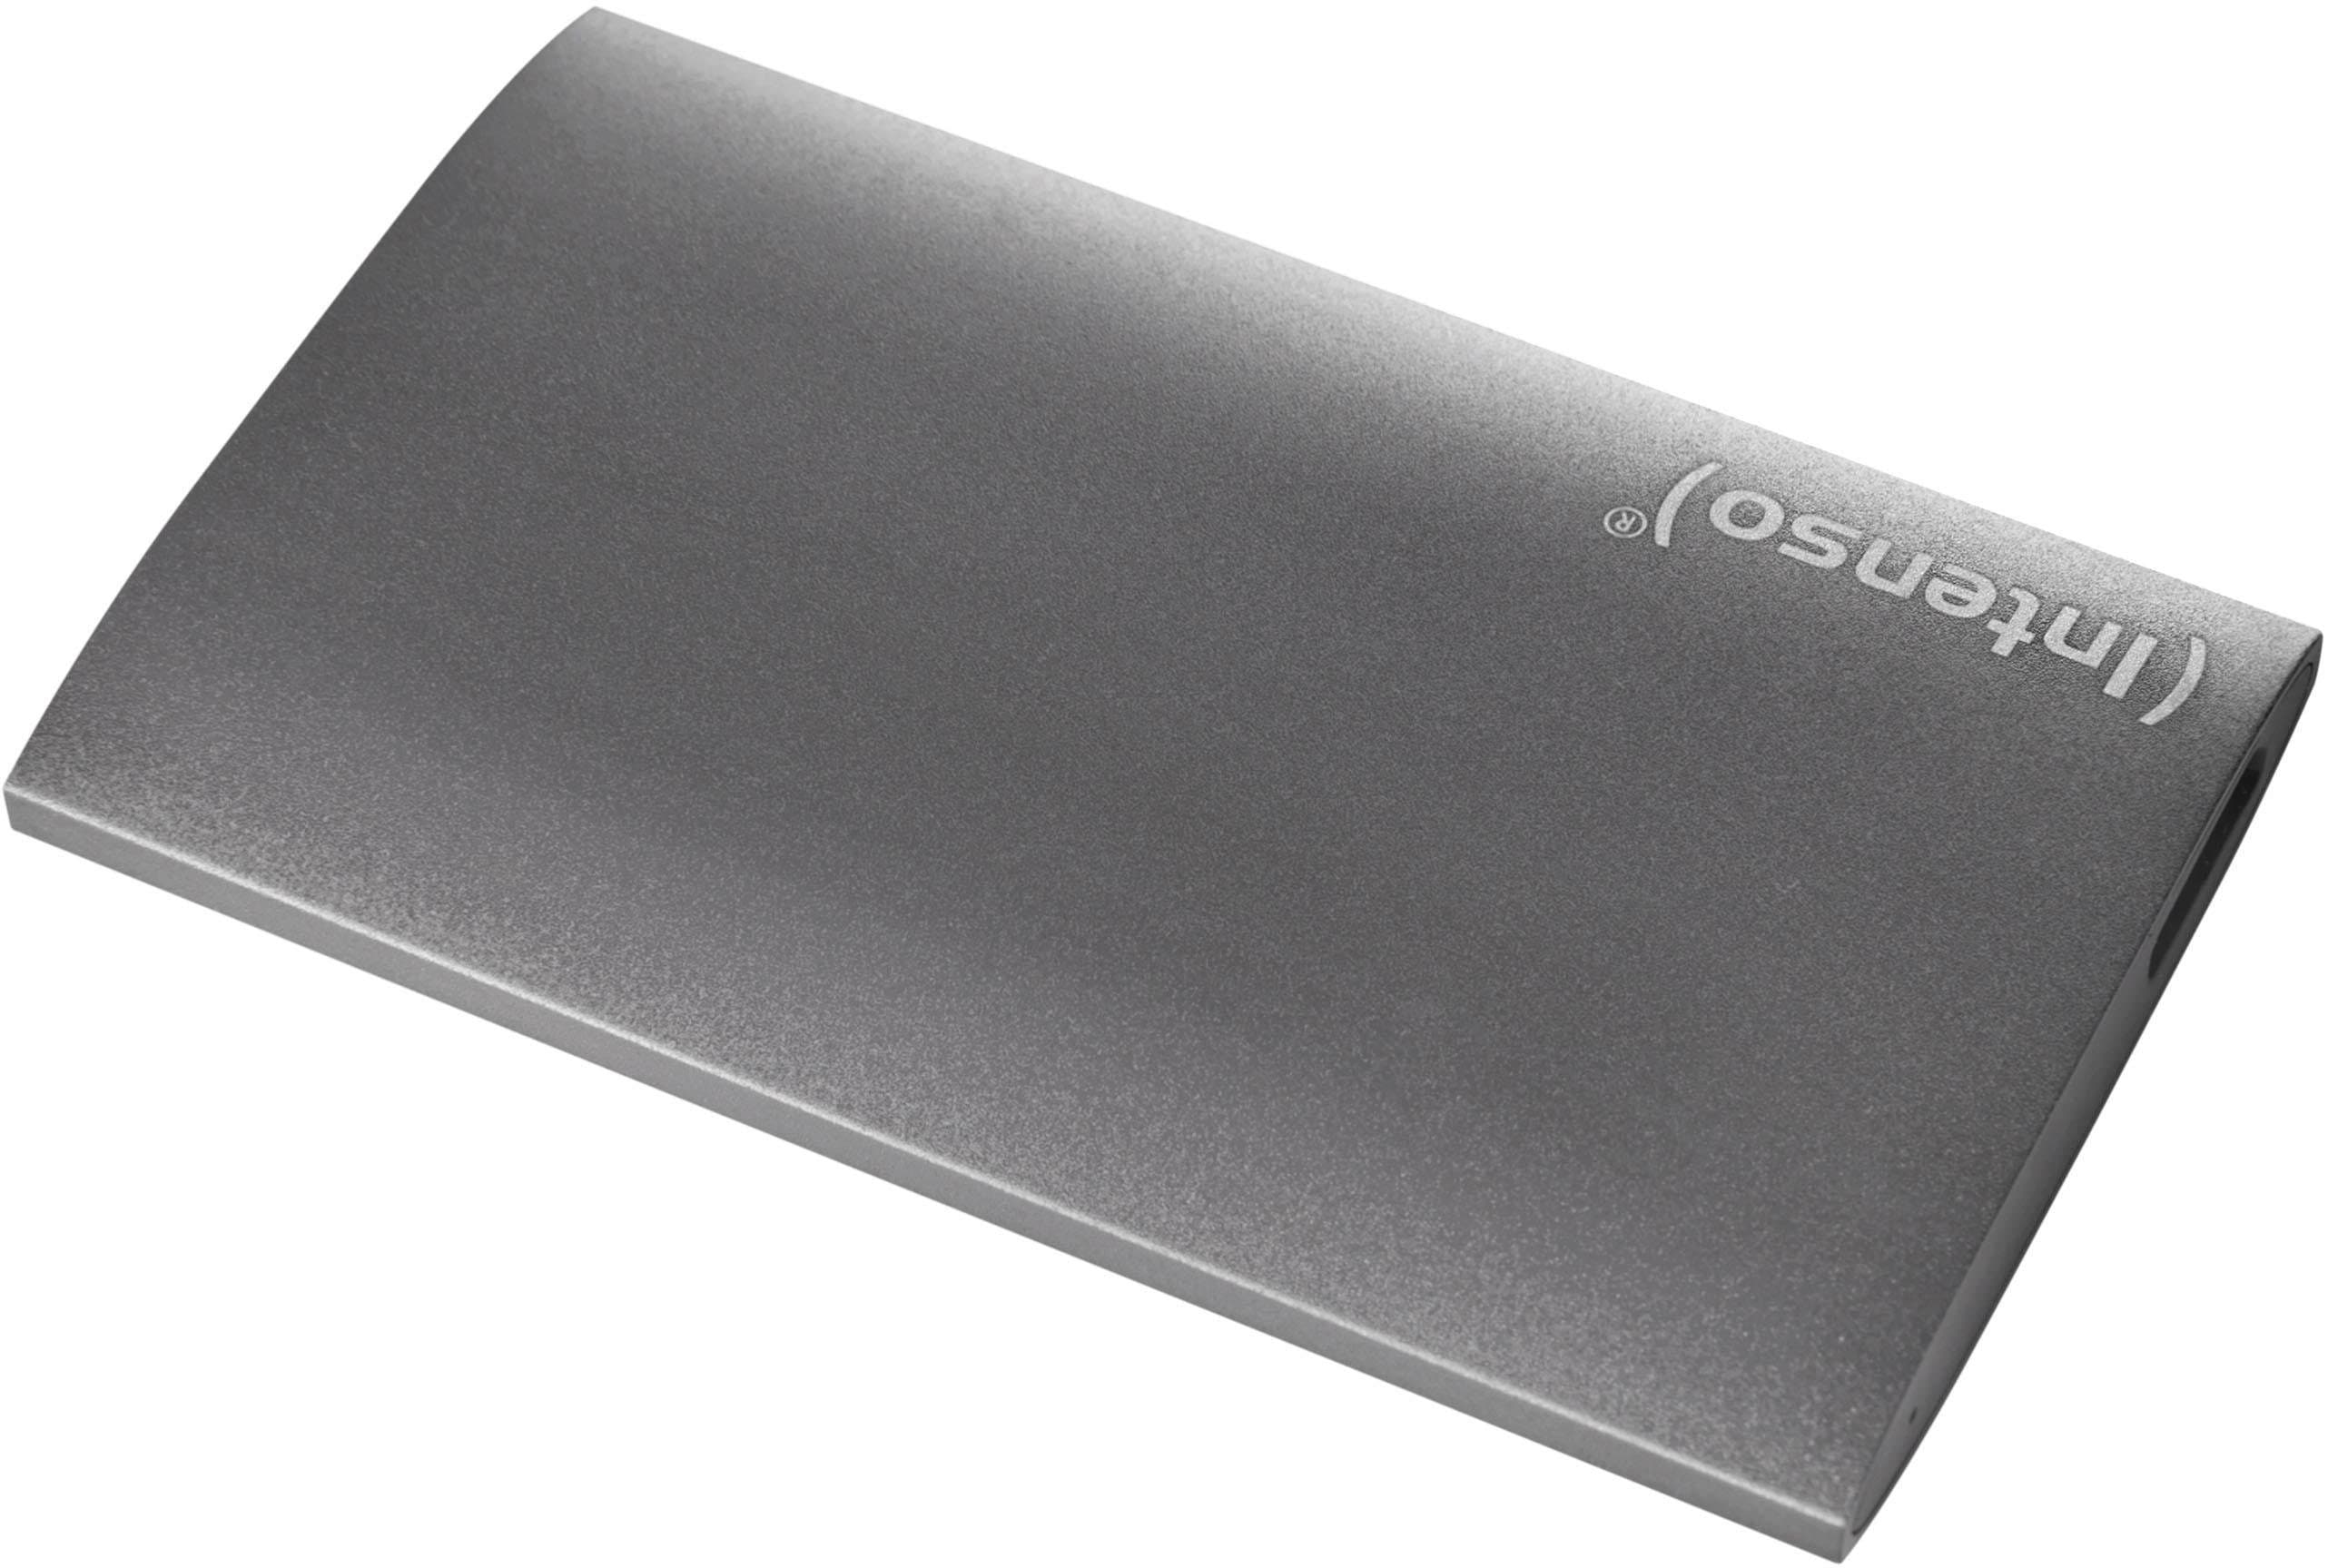 Externe SSD, 128GB, 1,8", USB 3.0, Aluminium Premium Edition